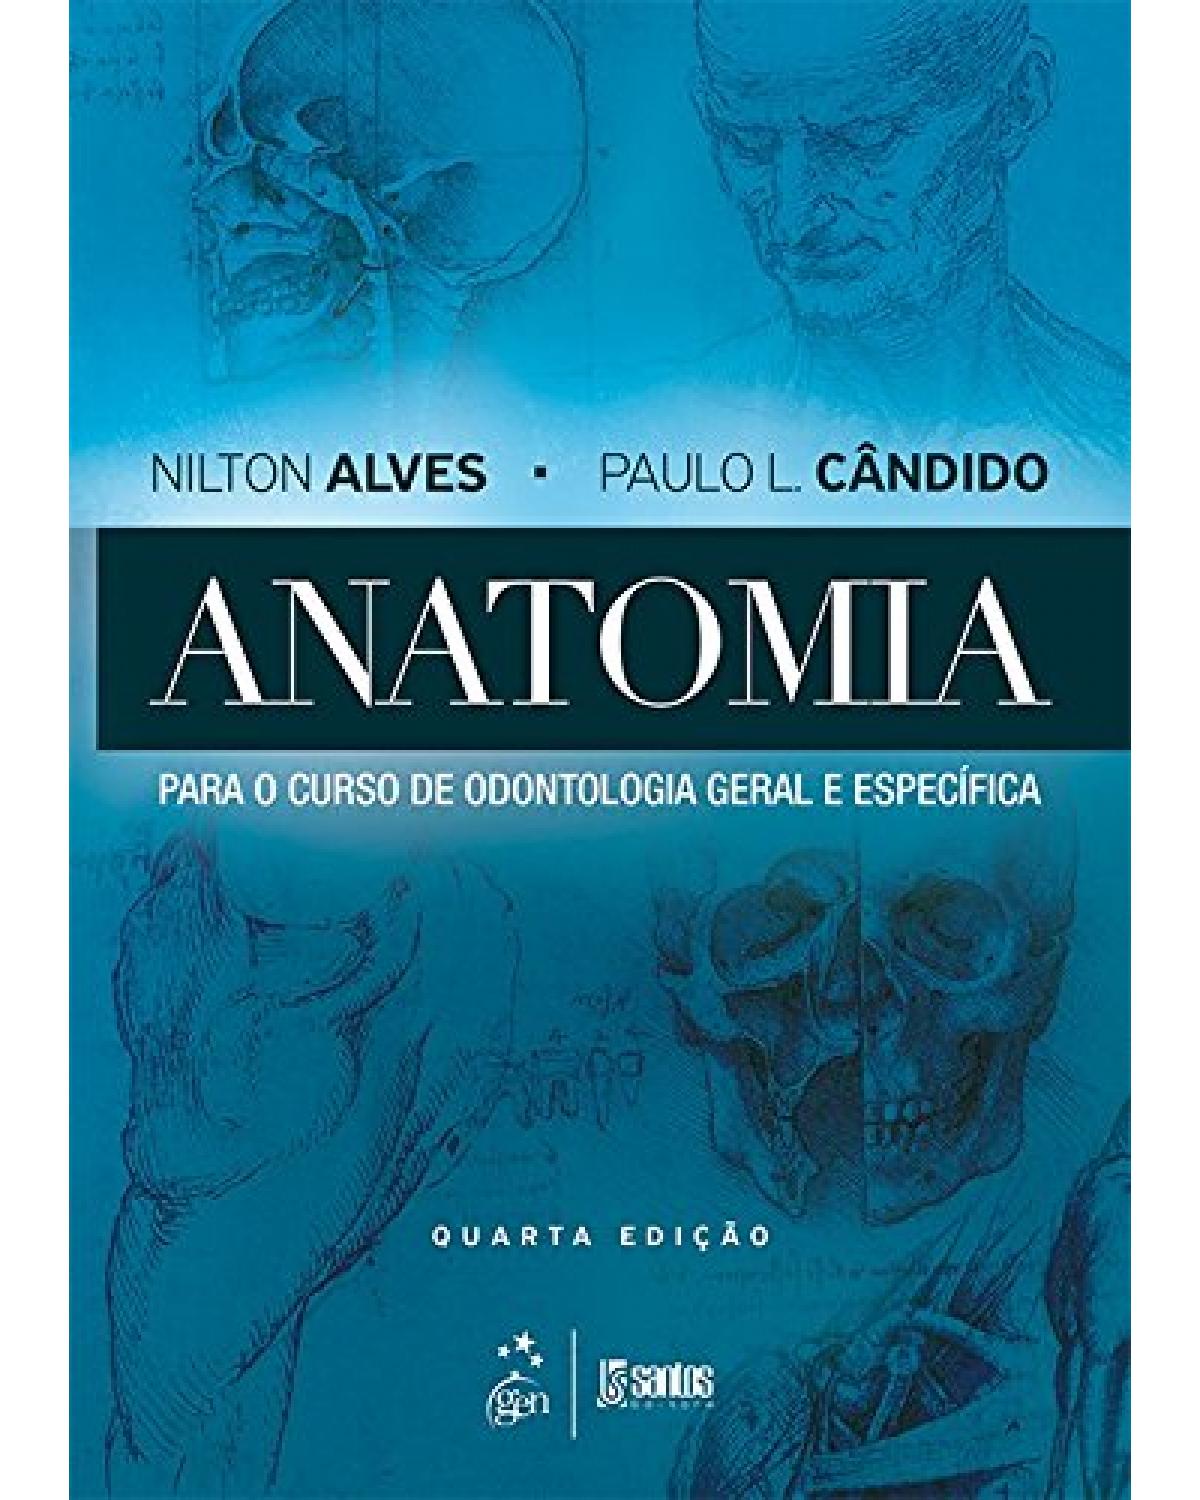 Anatomia para o curso de odontologia geral e específica - 4ª Edição | 2016